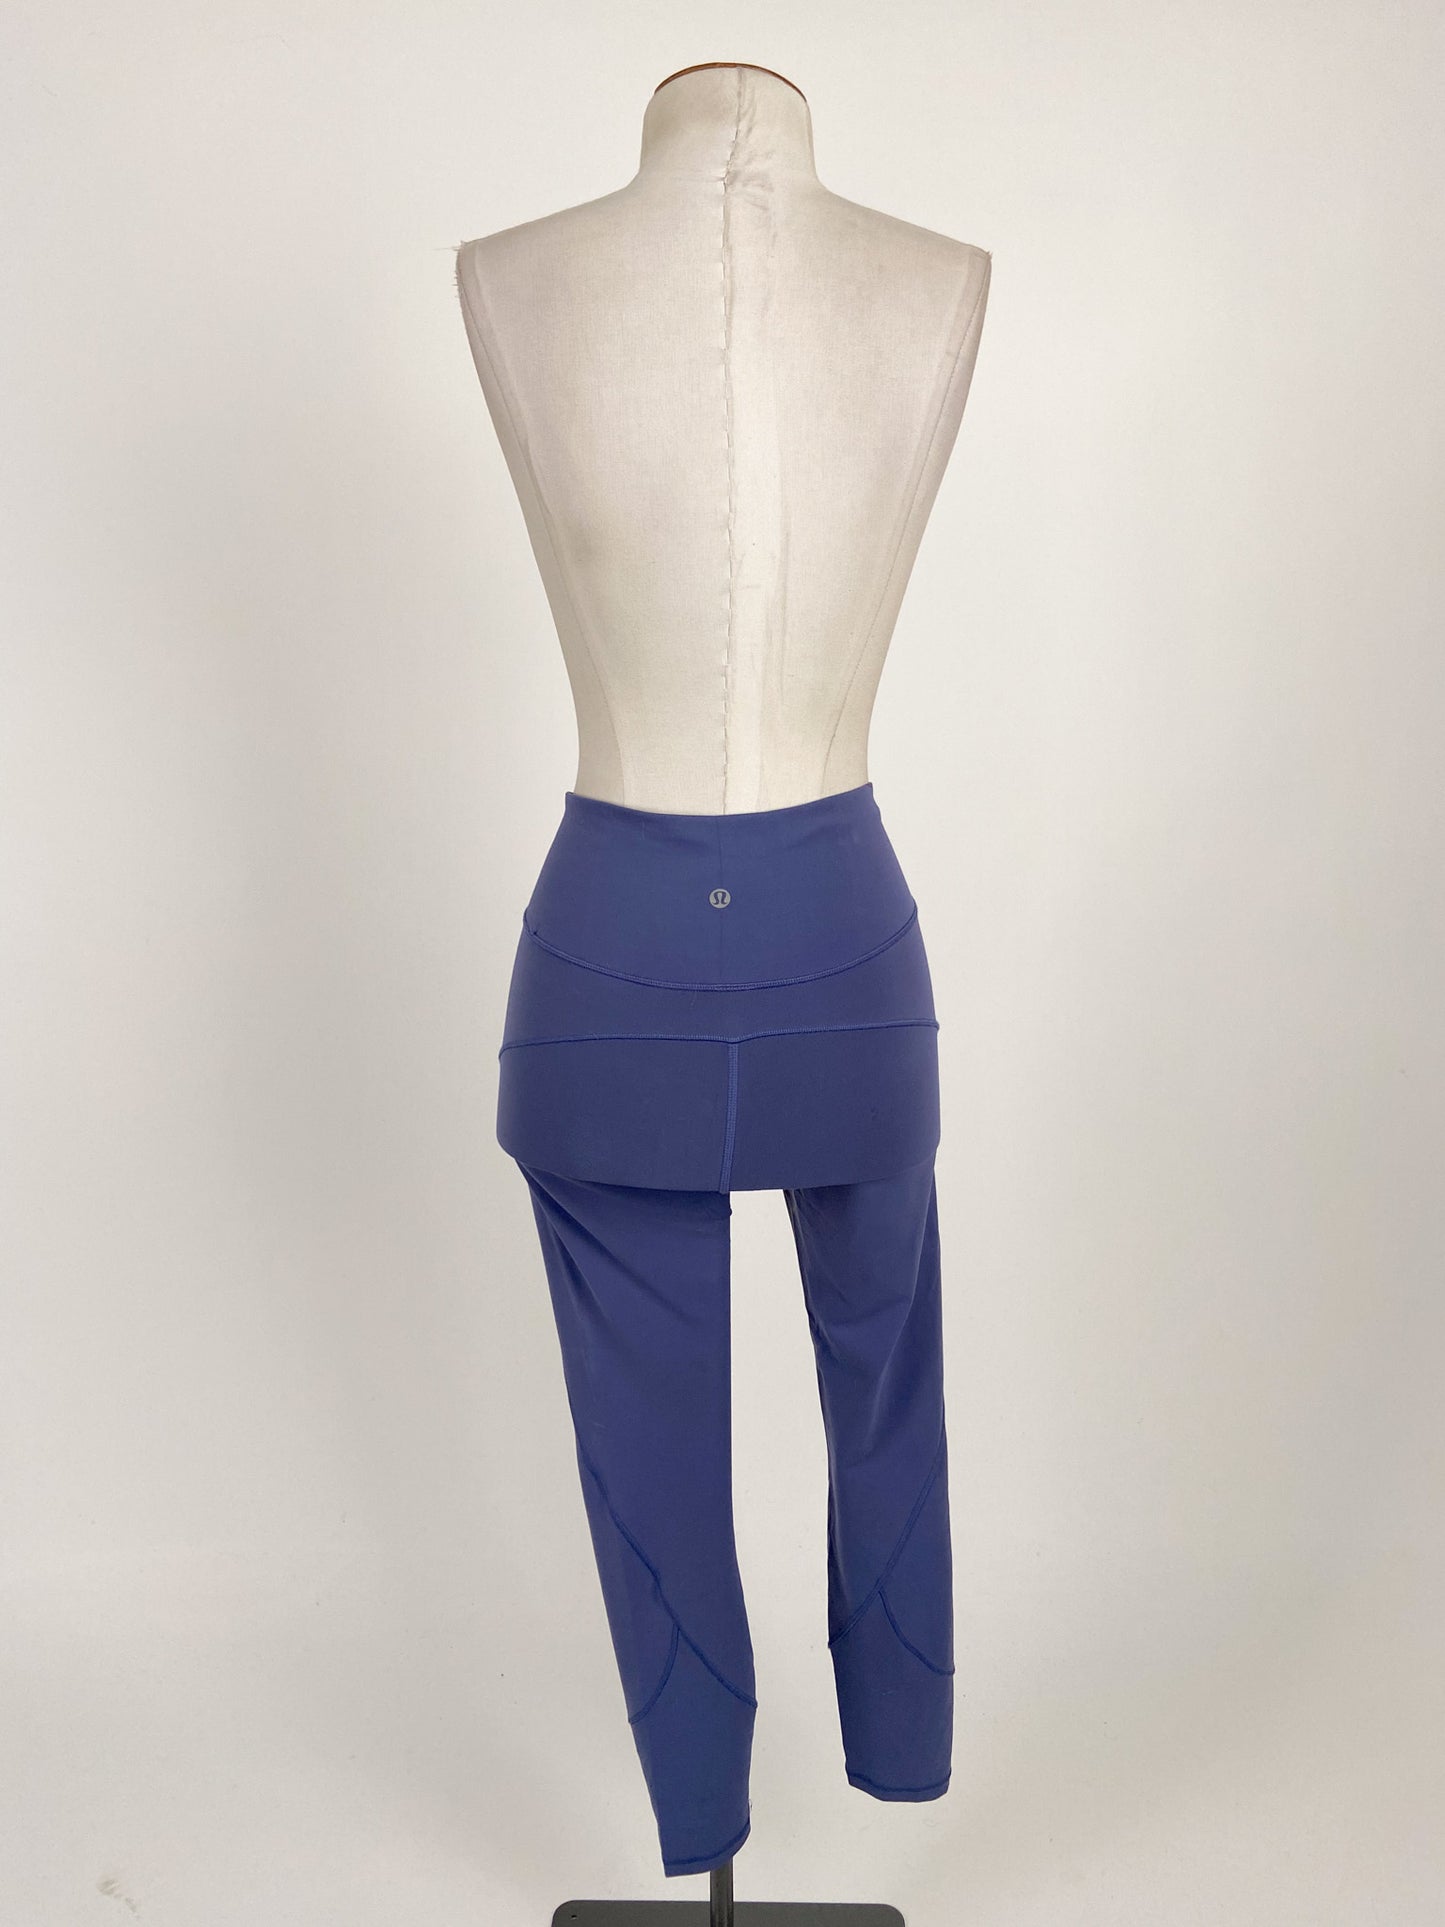 Lululemon | Blue Casual Activewear Bottom | Size 8